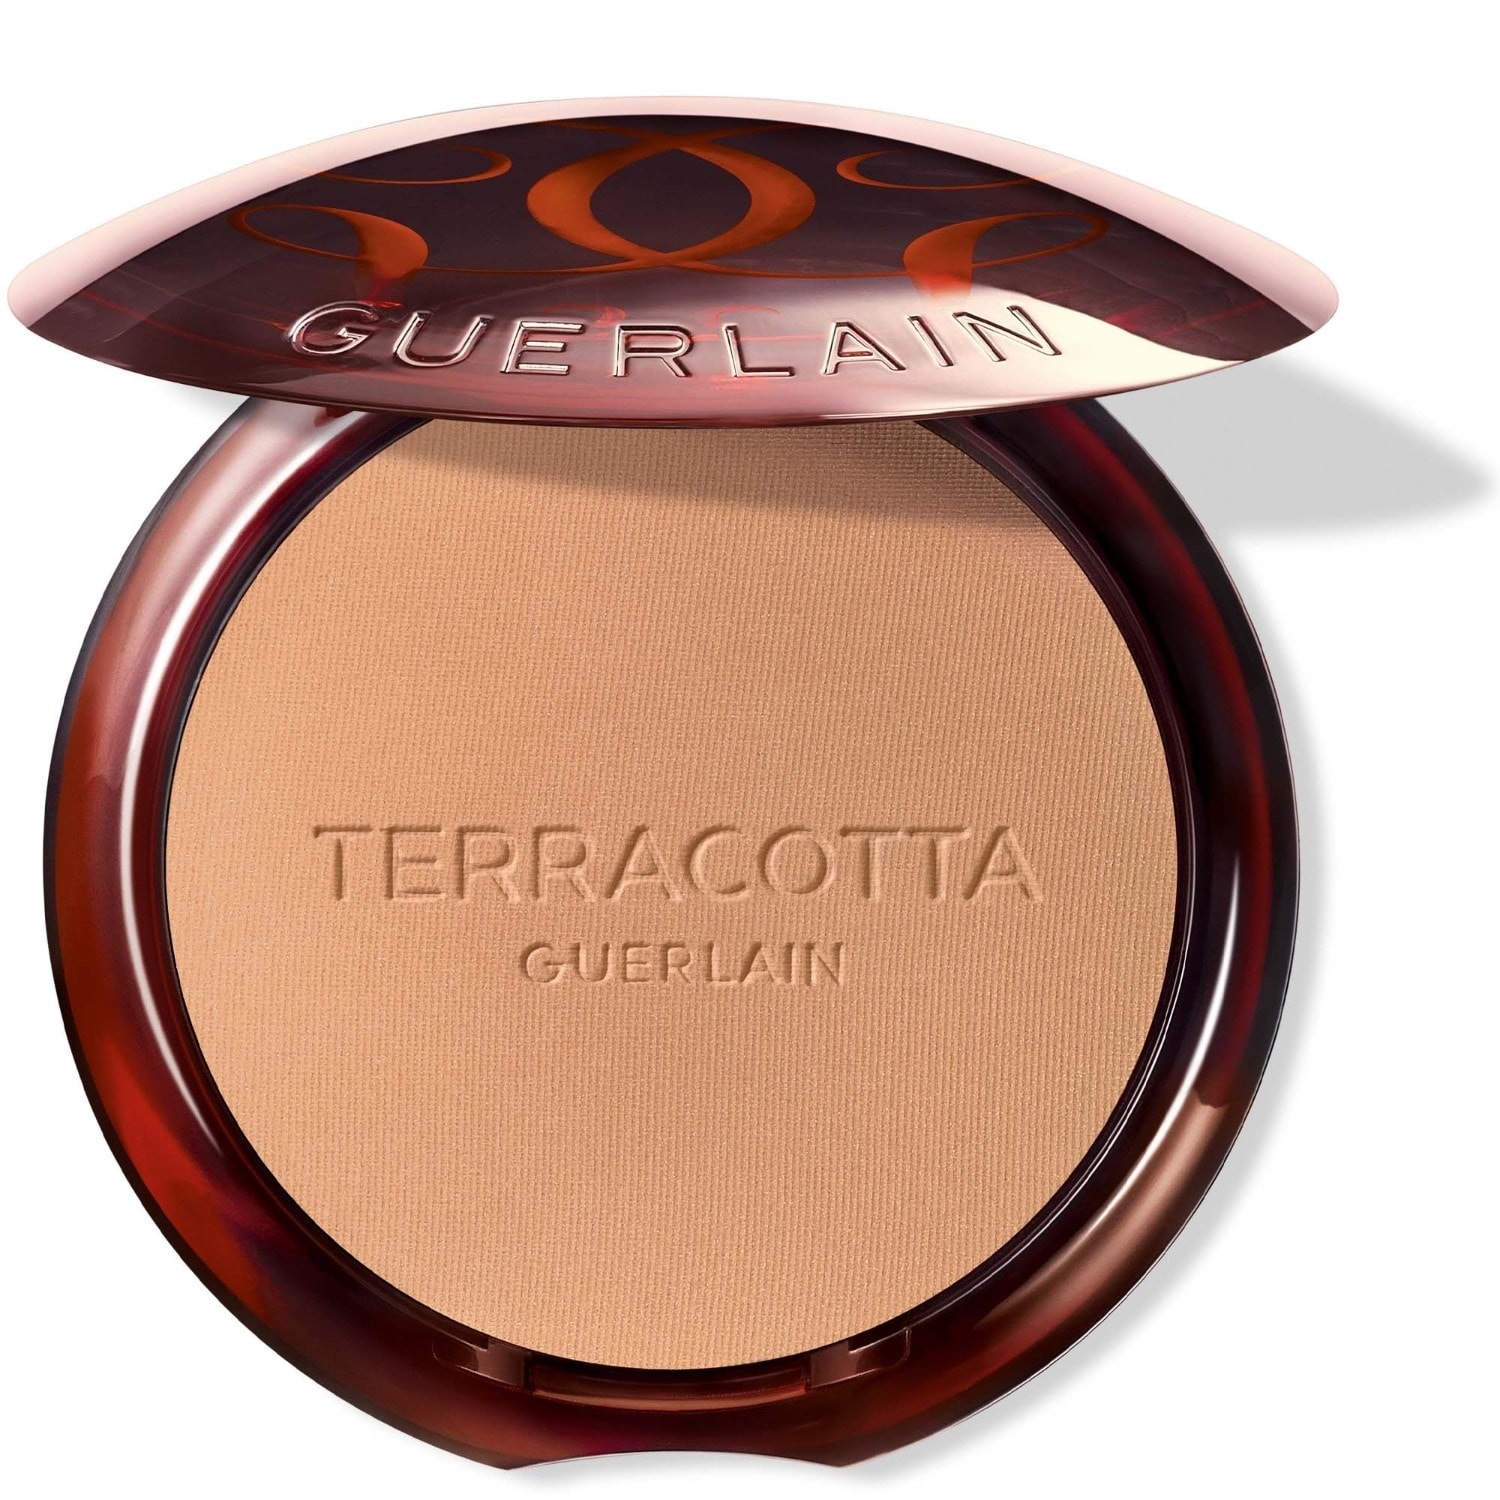 Guerlain Terracotta compact powder, 8.5 ml